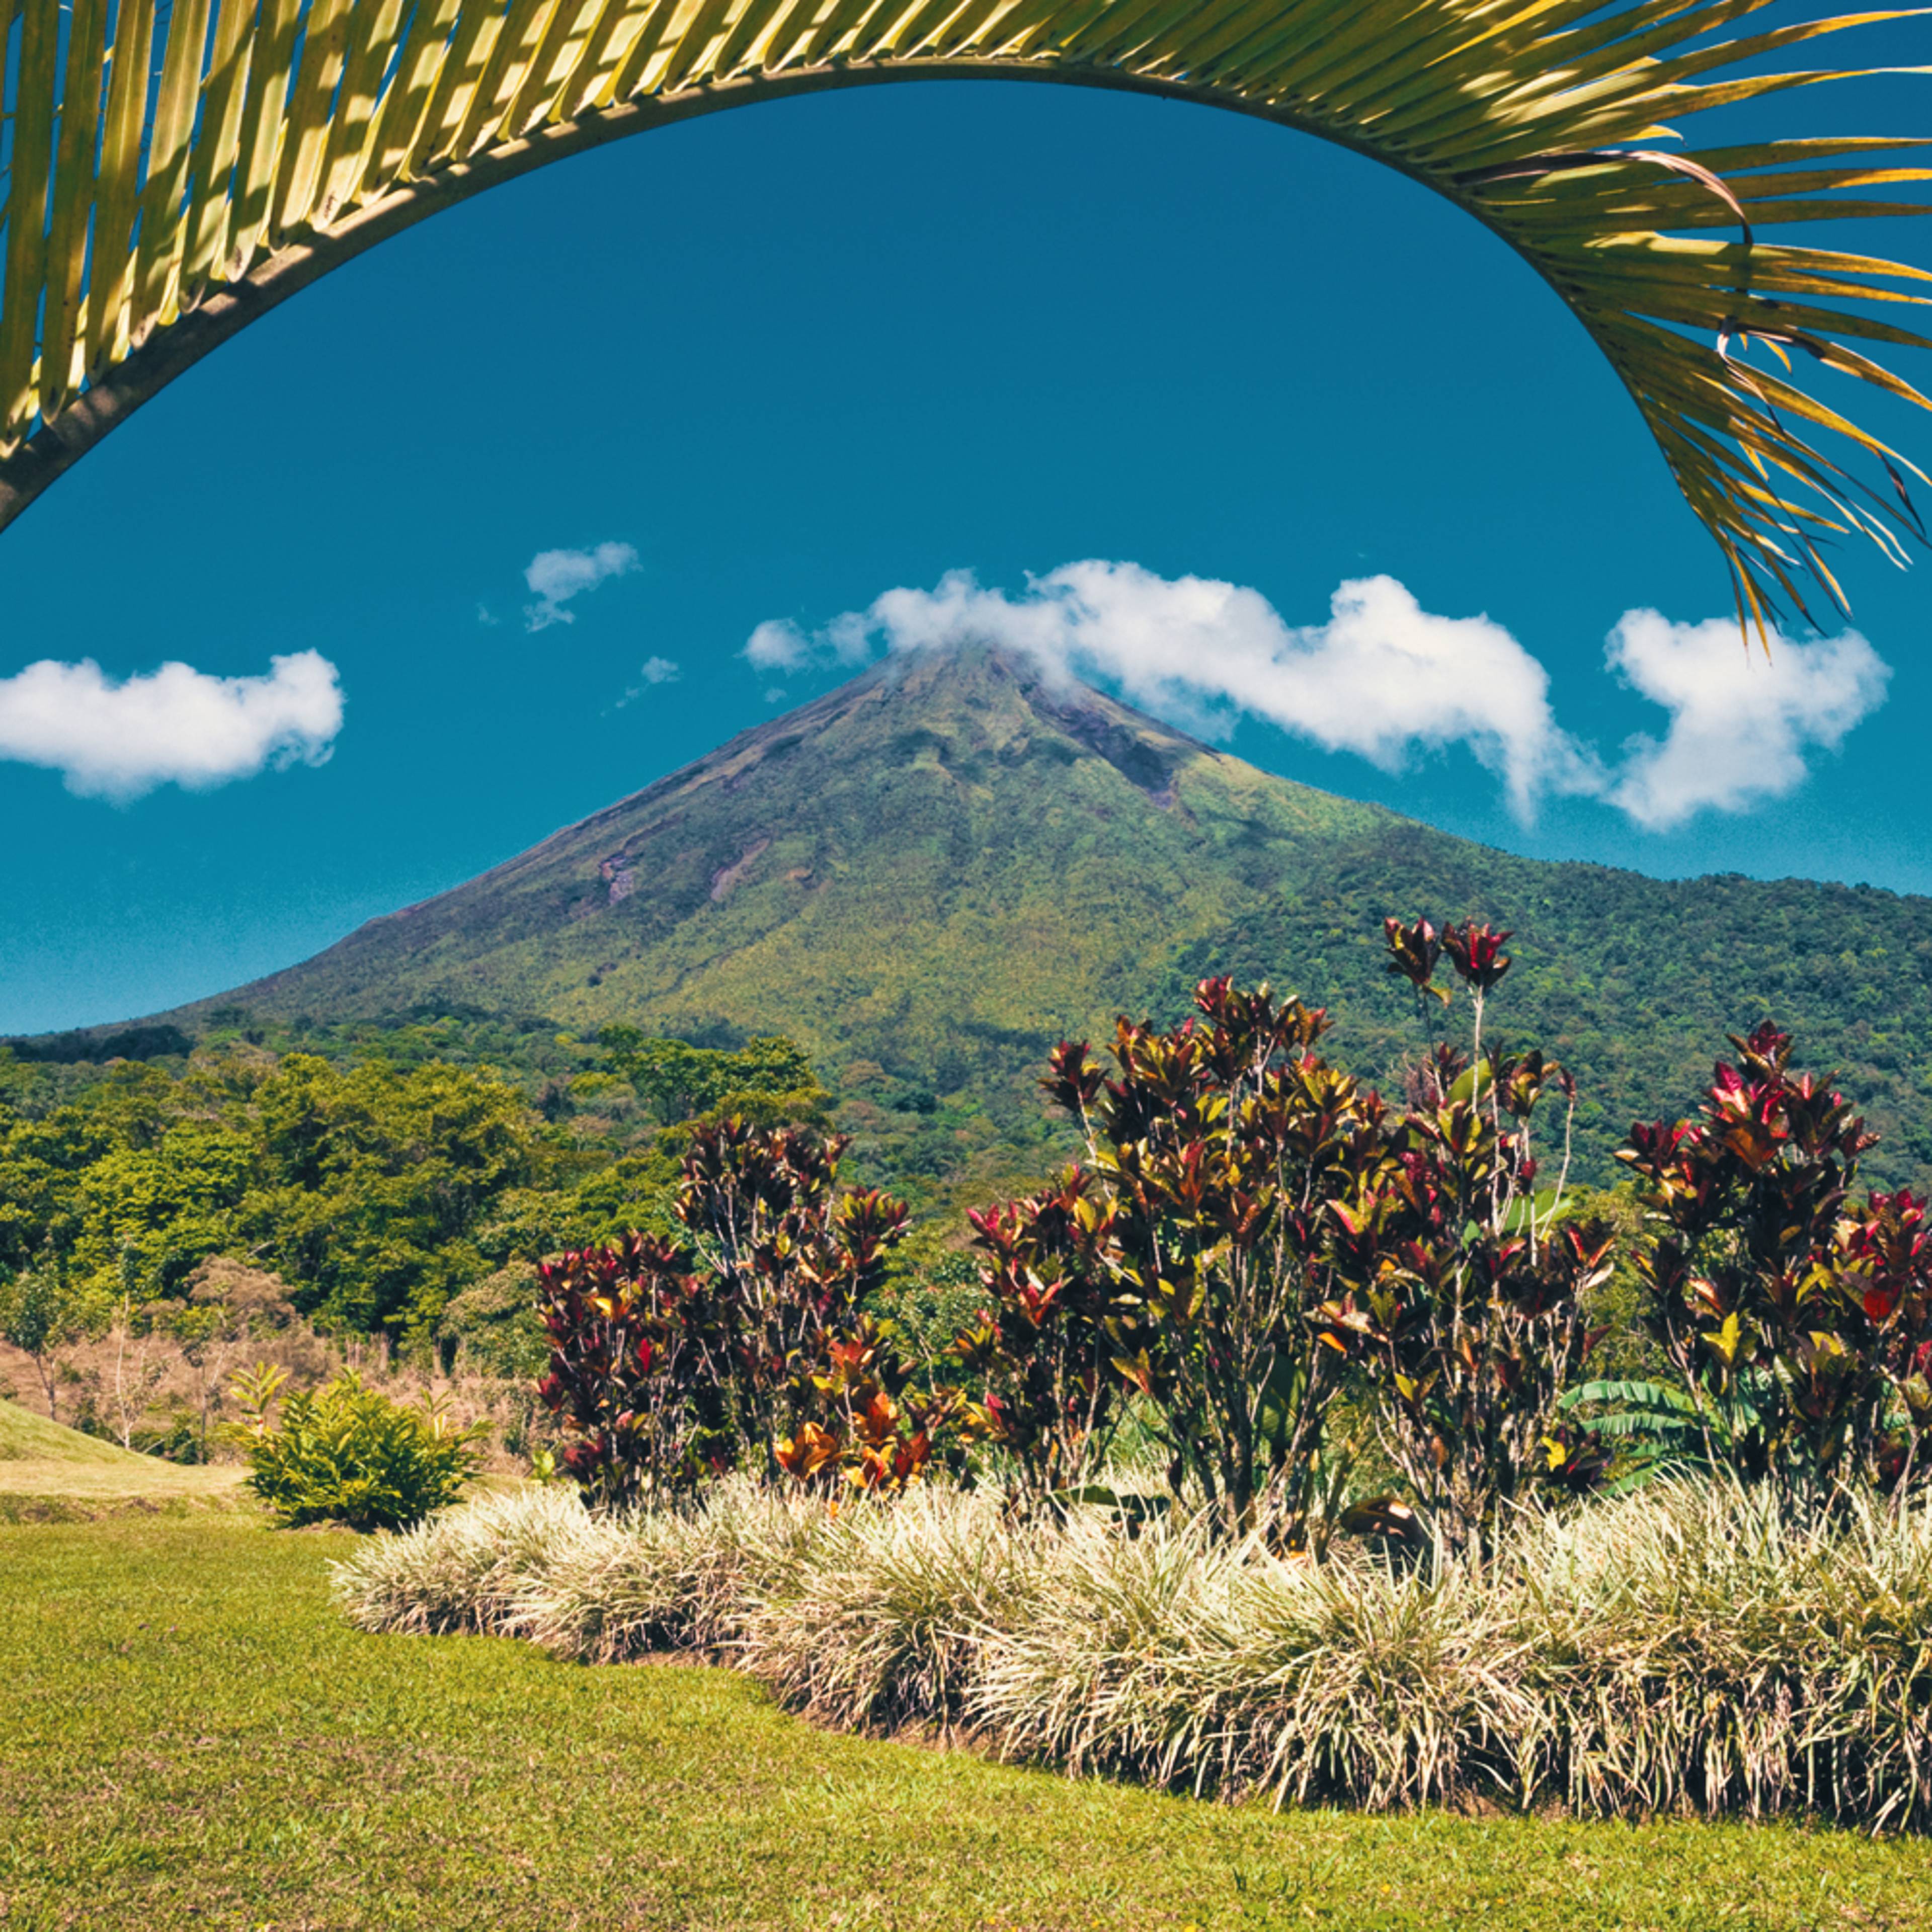 Crea il tuo viaggio in Costa Rica in estate, 100% su misura